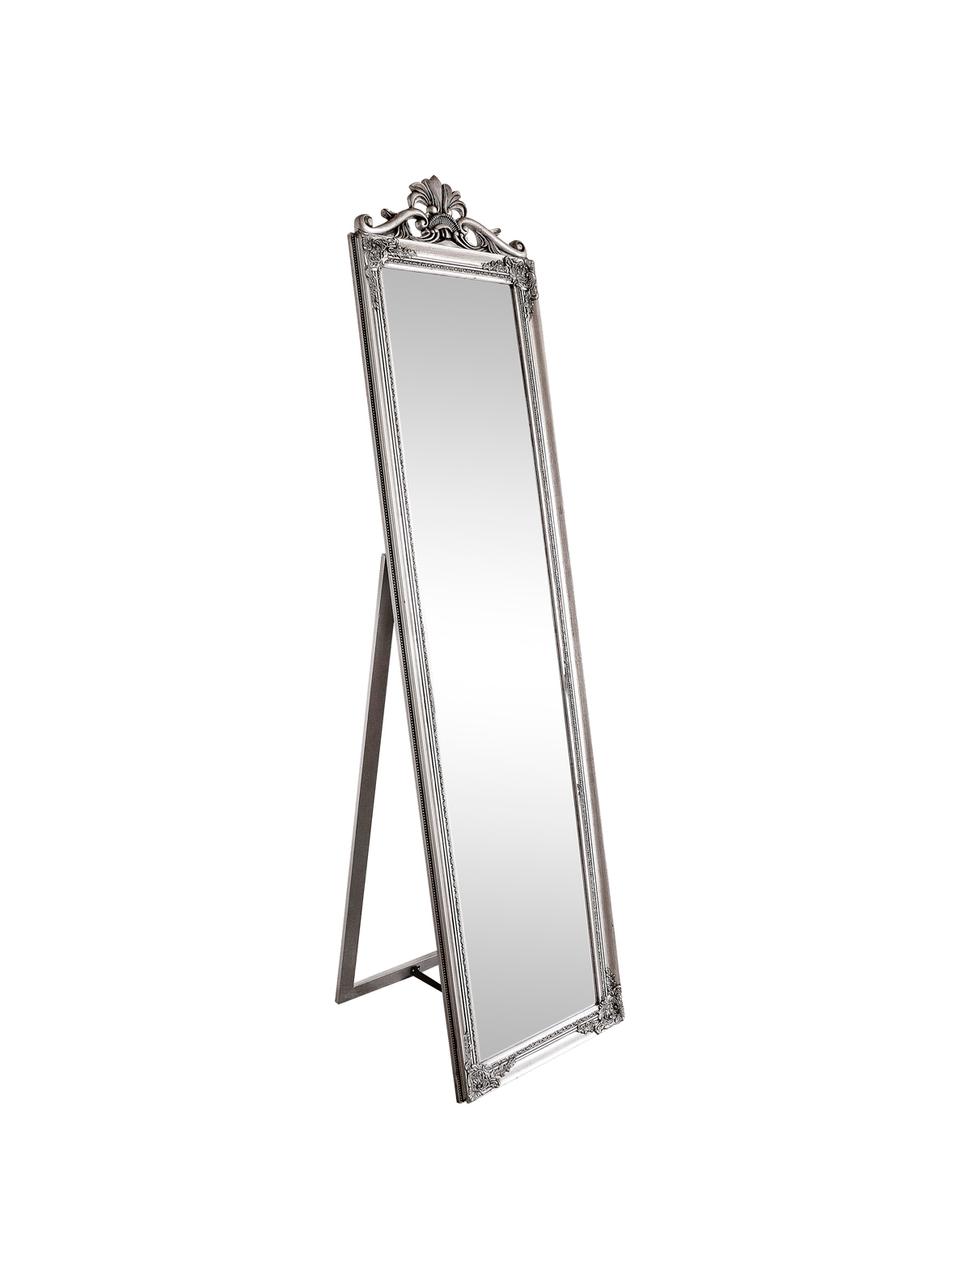 Standspiegel Miro mit silbernem Holzrahmen, Rahmen: Holz, beschichtet, Spiegelfläche: Spiegelglas, Silberfarben, B 45 x H 180 cm